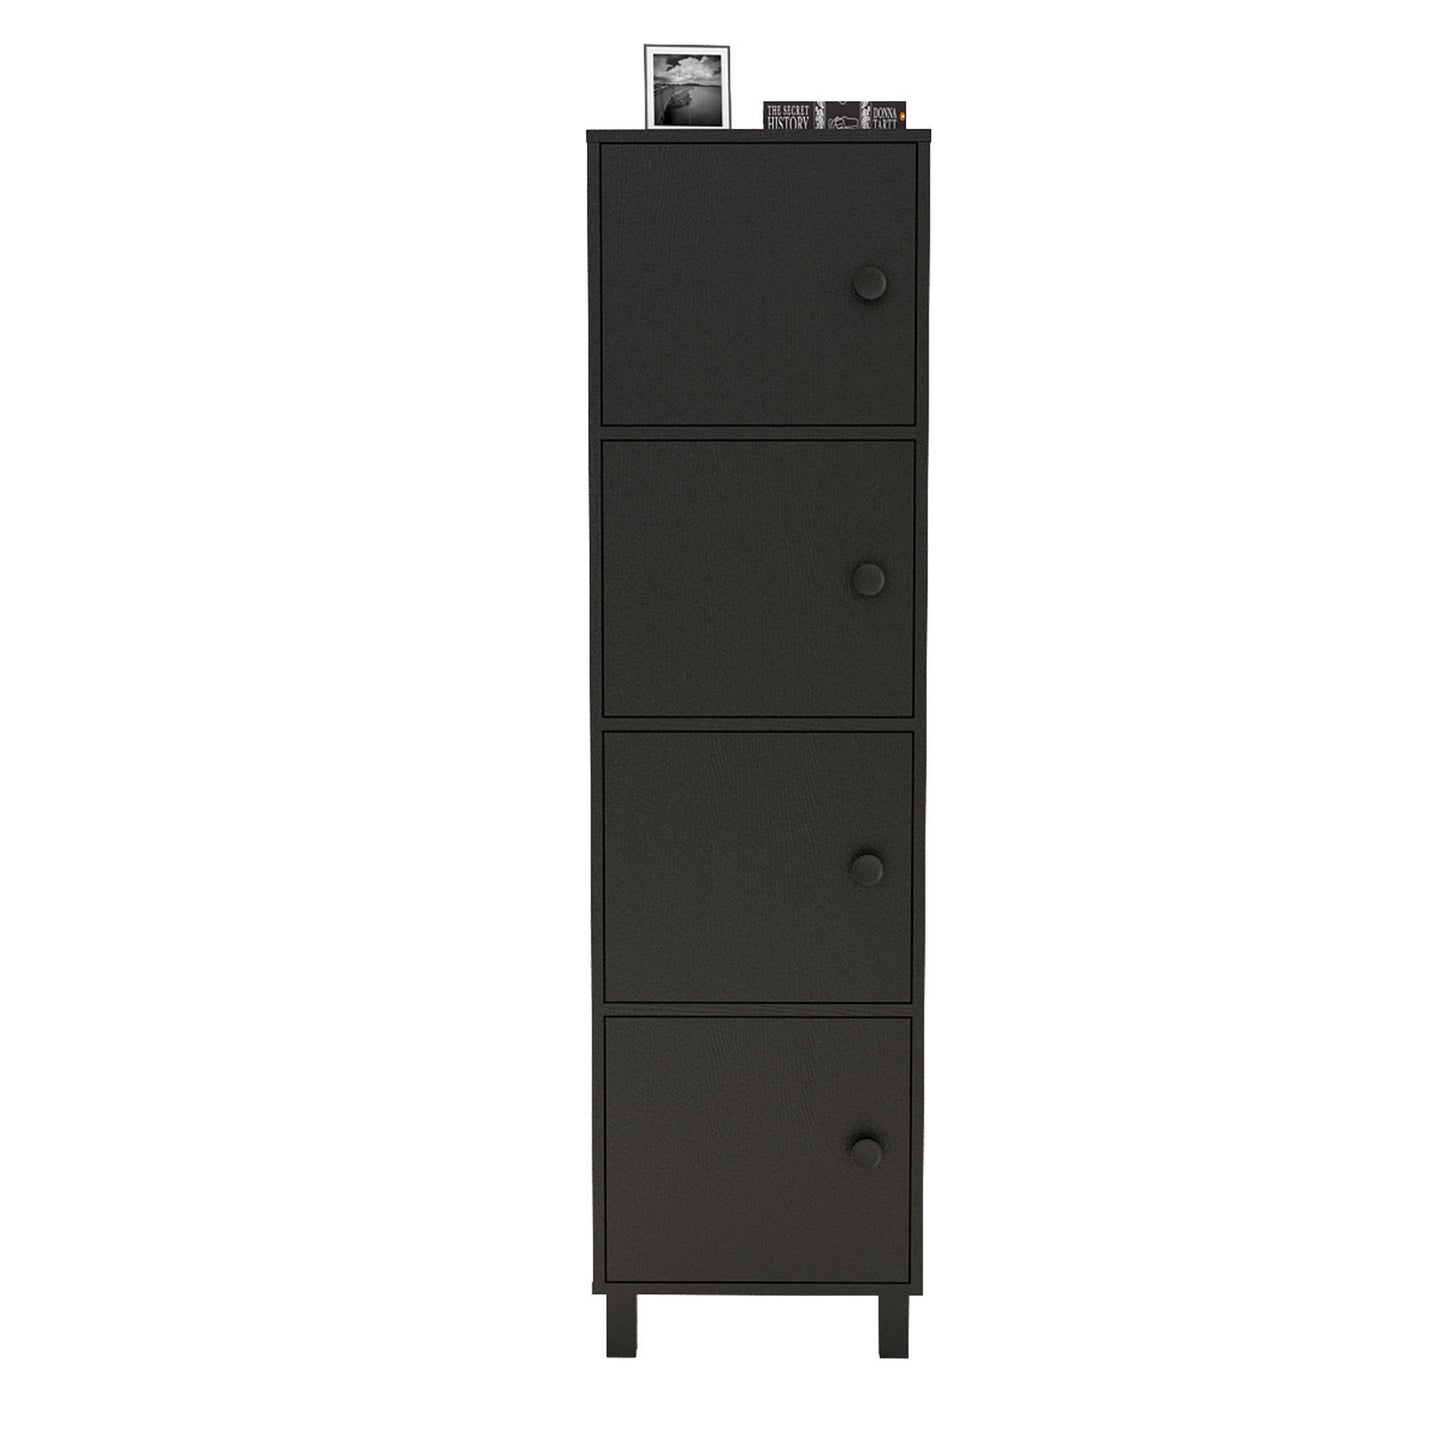 VL30-338 - Multi Purpose Cabinet